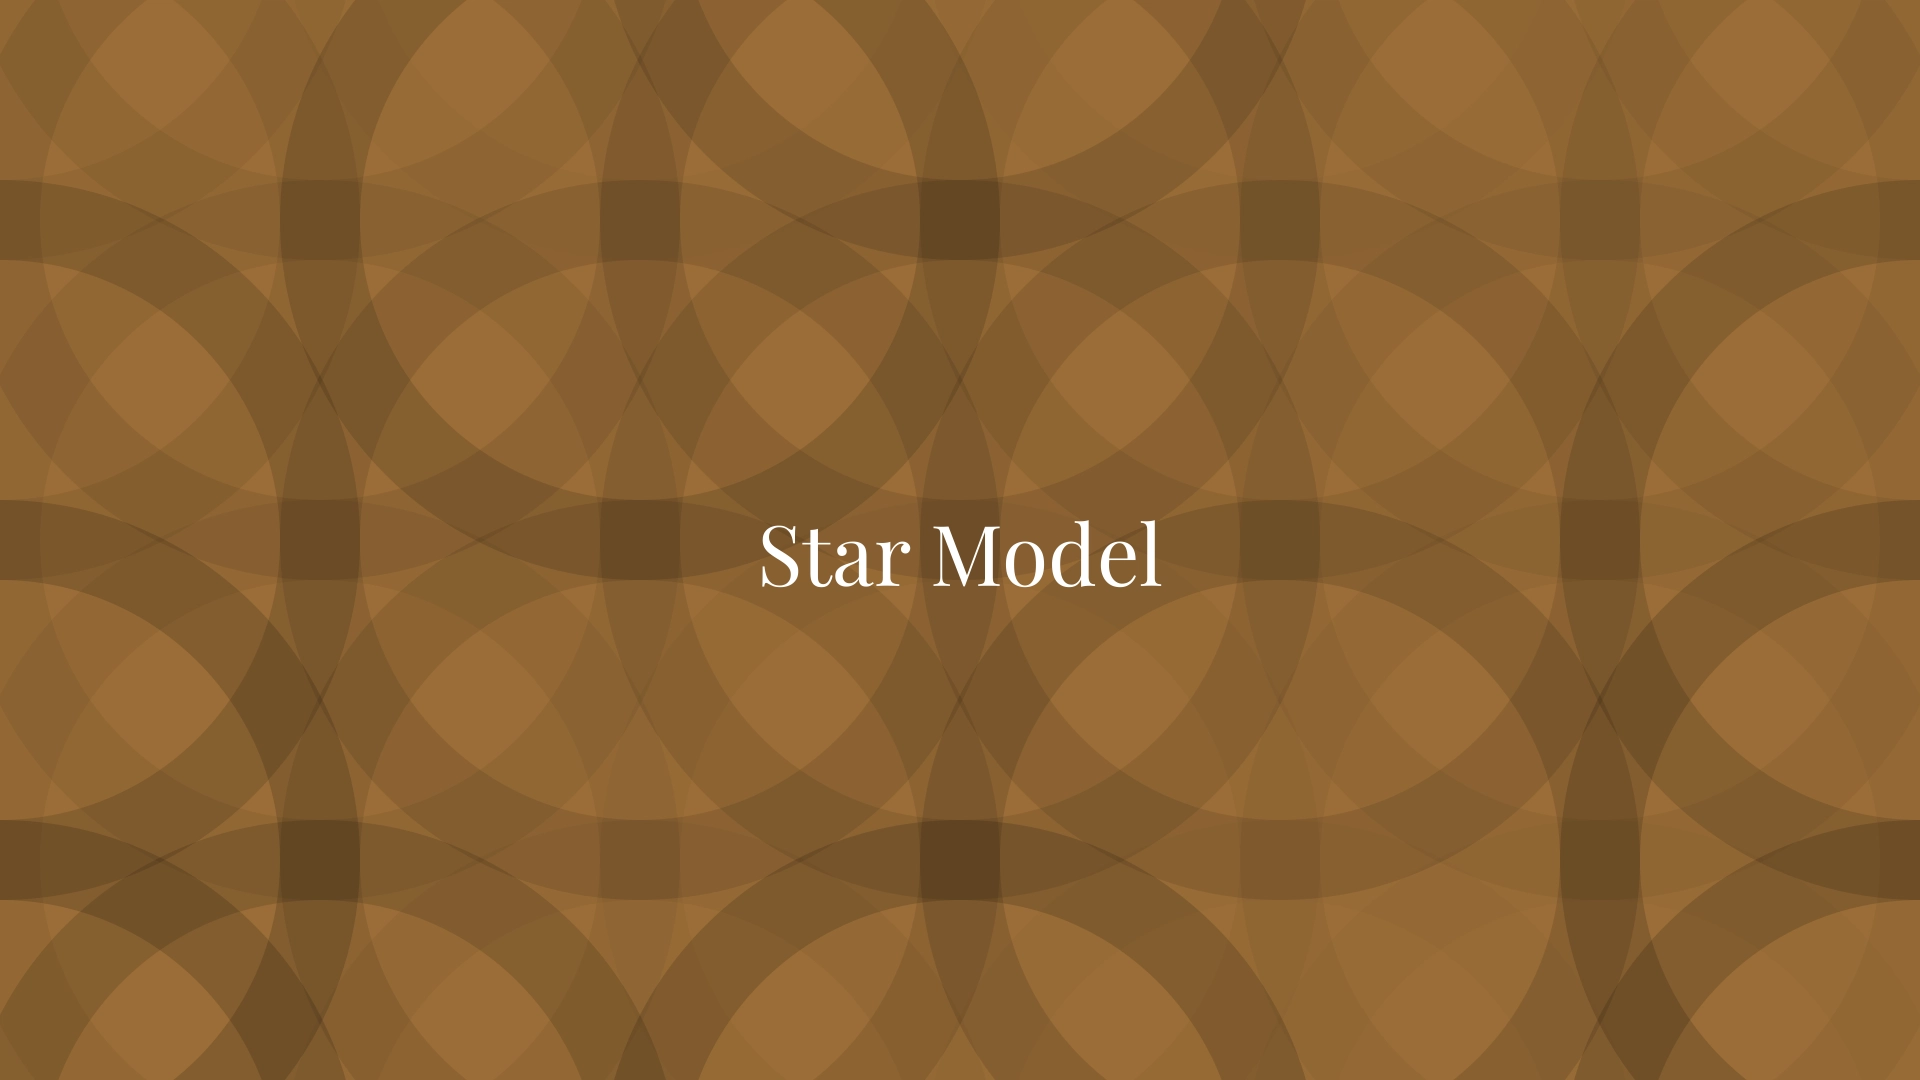 Star Model